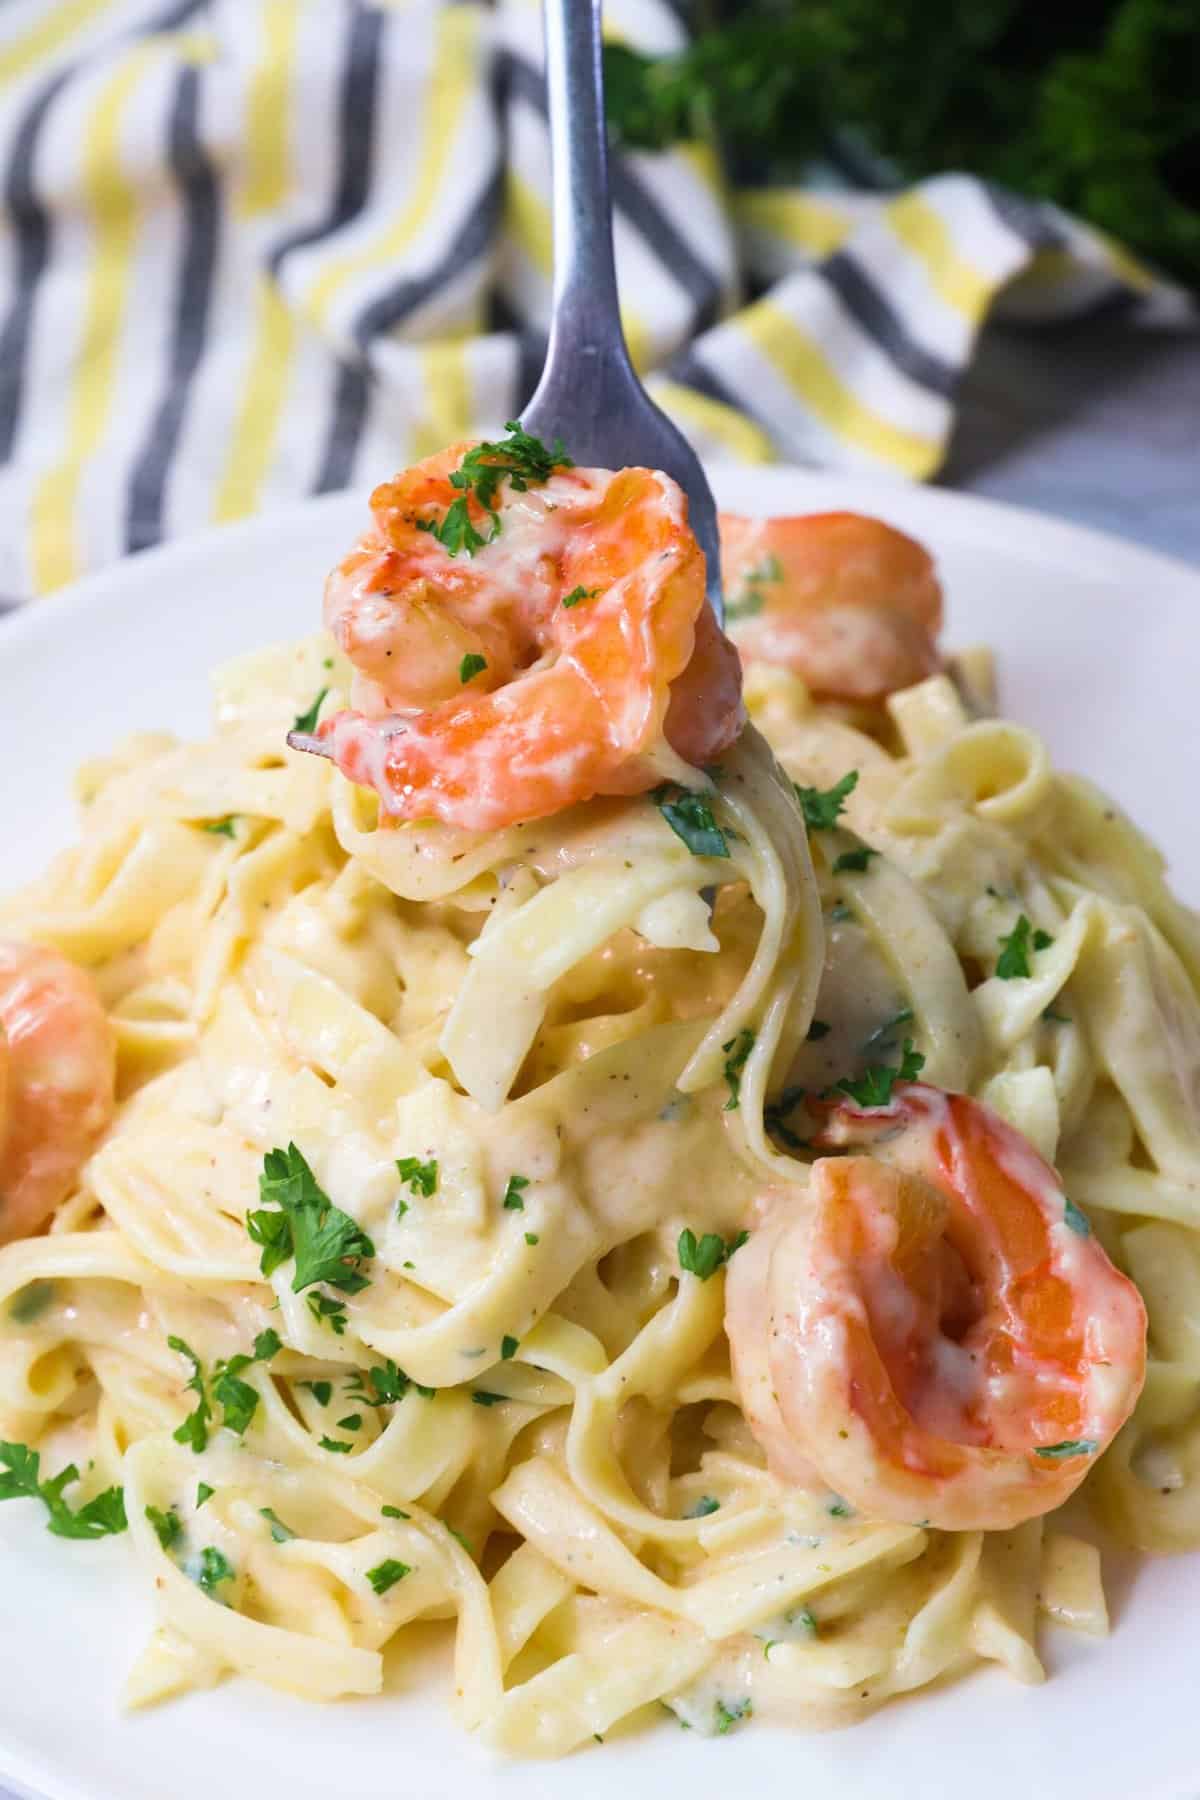 Diving into a decadent plate of shrimp Alfredo pasta